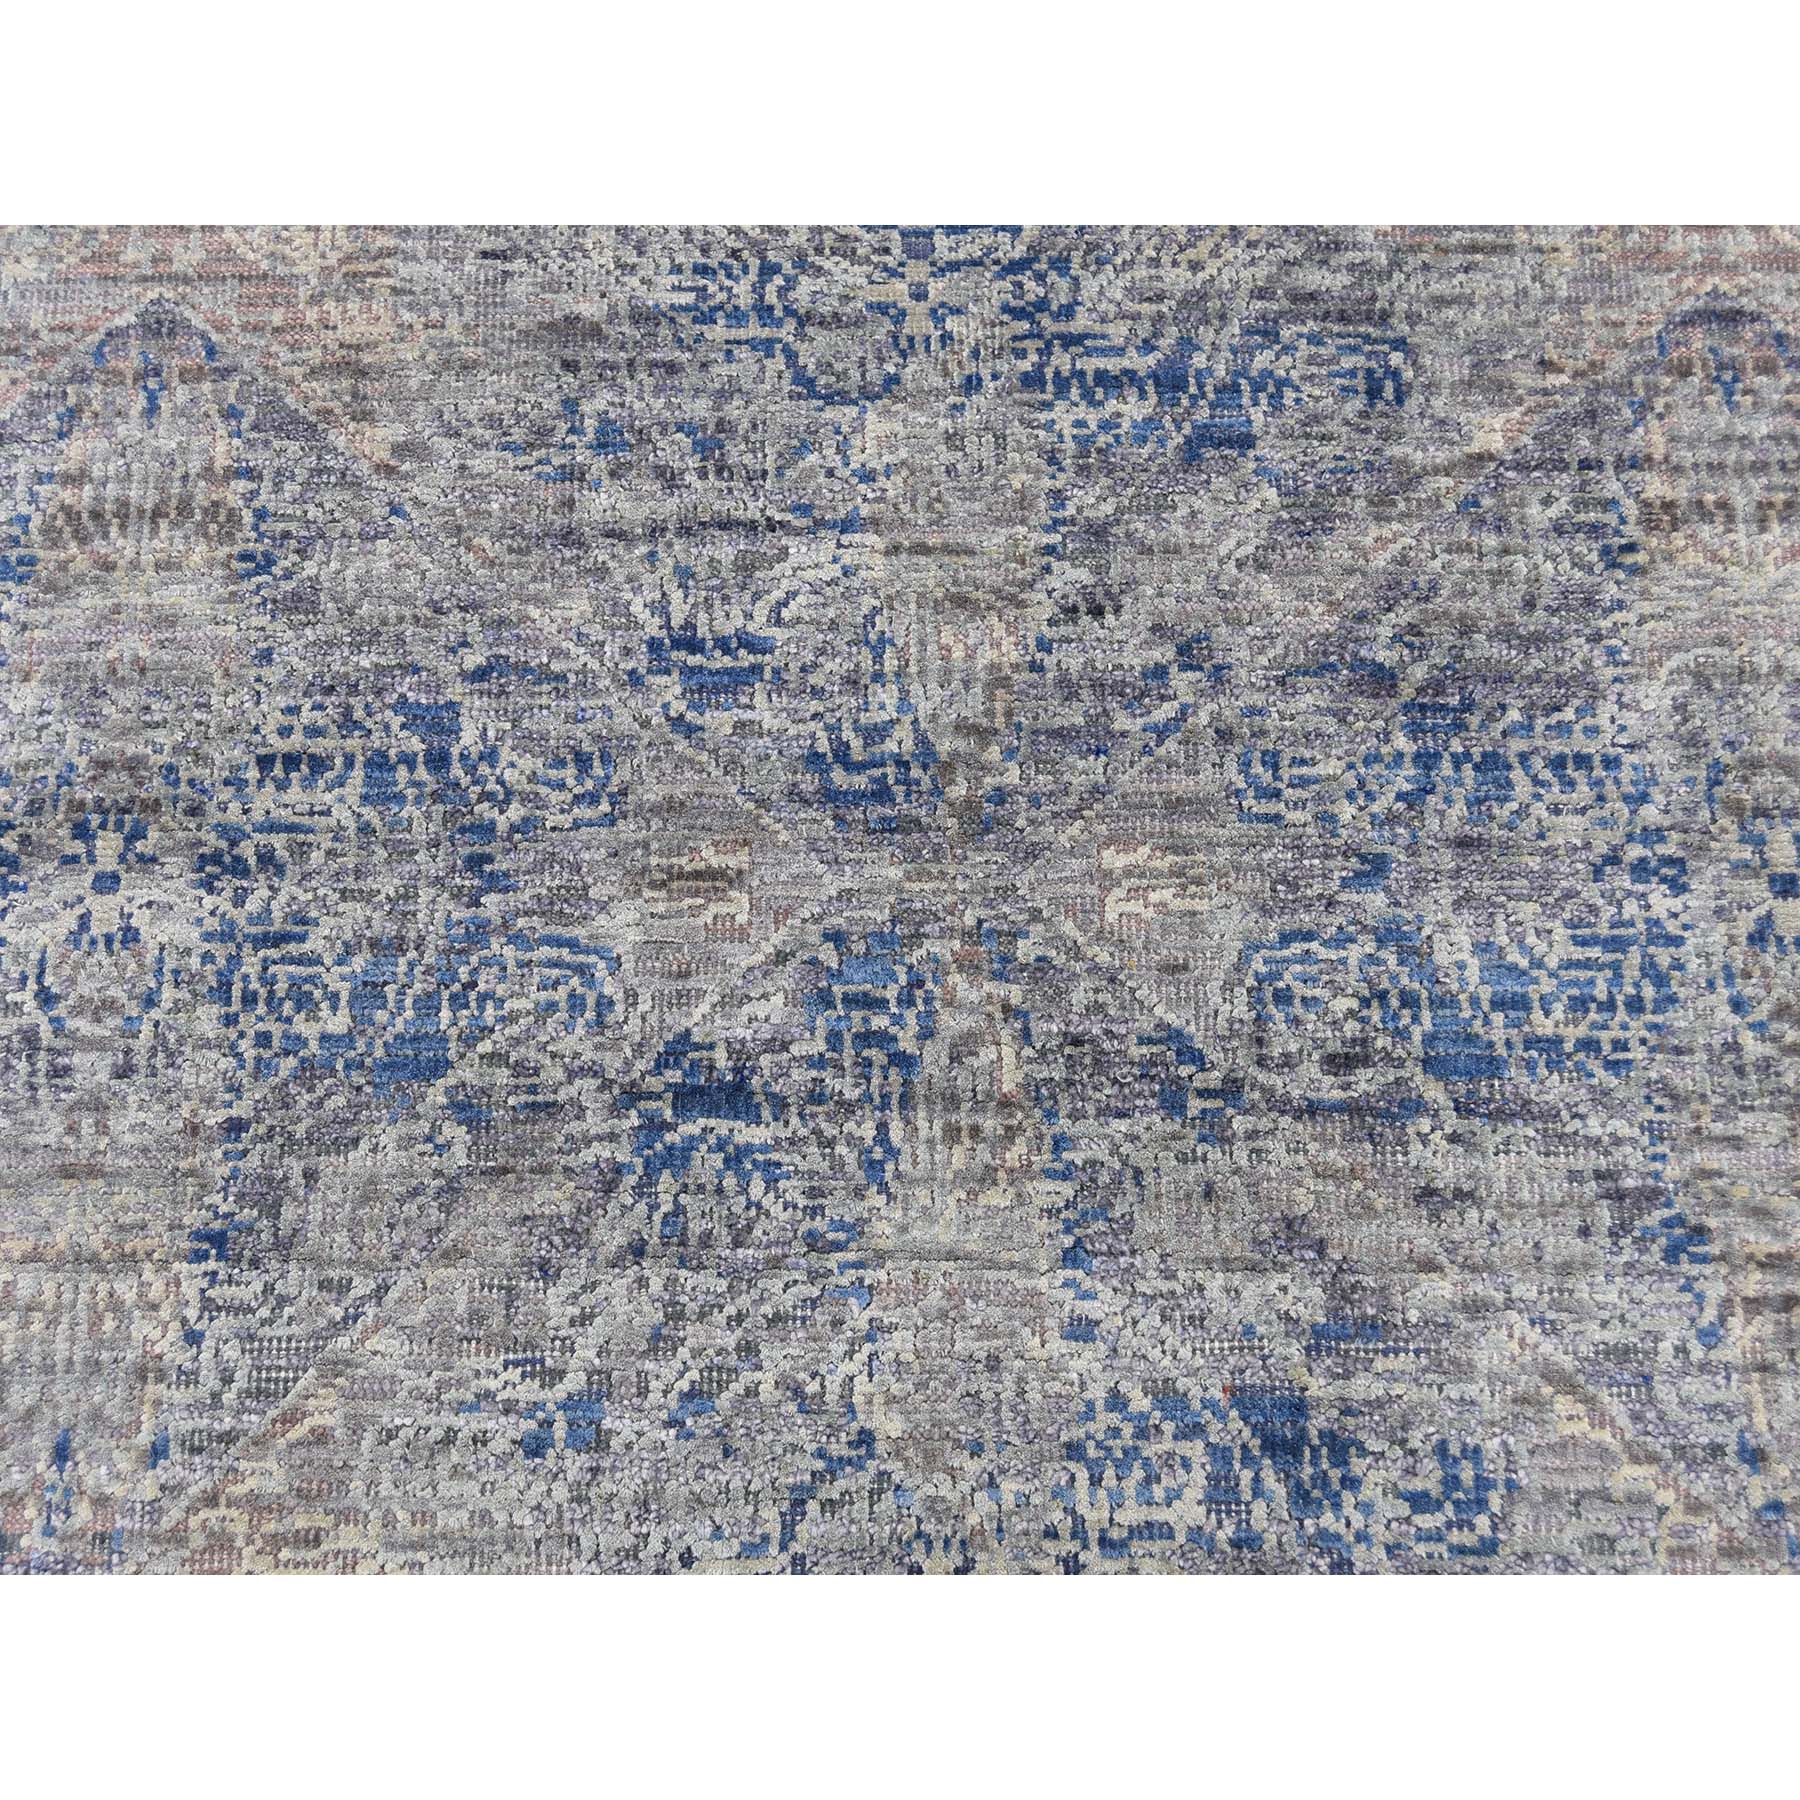 8'x10' Silk With Textured Wool Denim Blue Erased Rosette Design Hand Woven Oriental Rug 